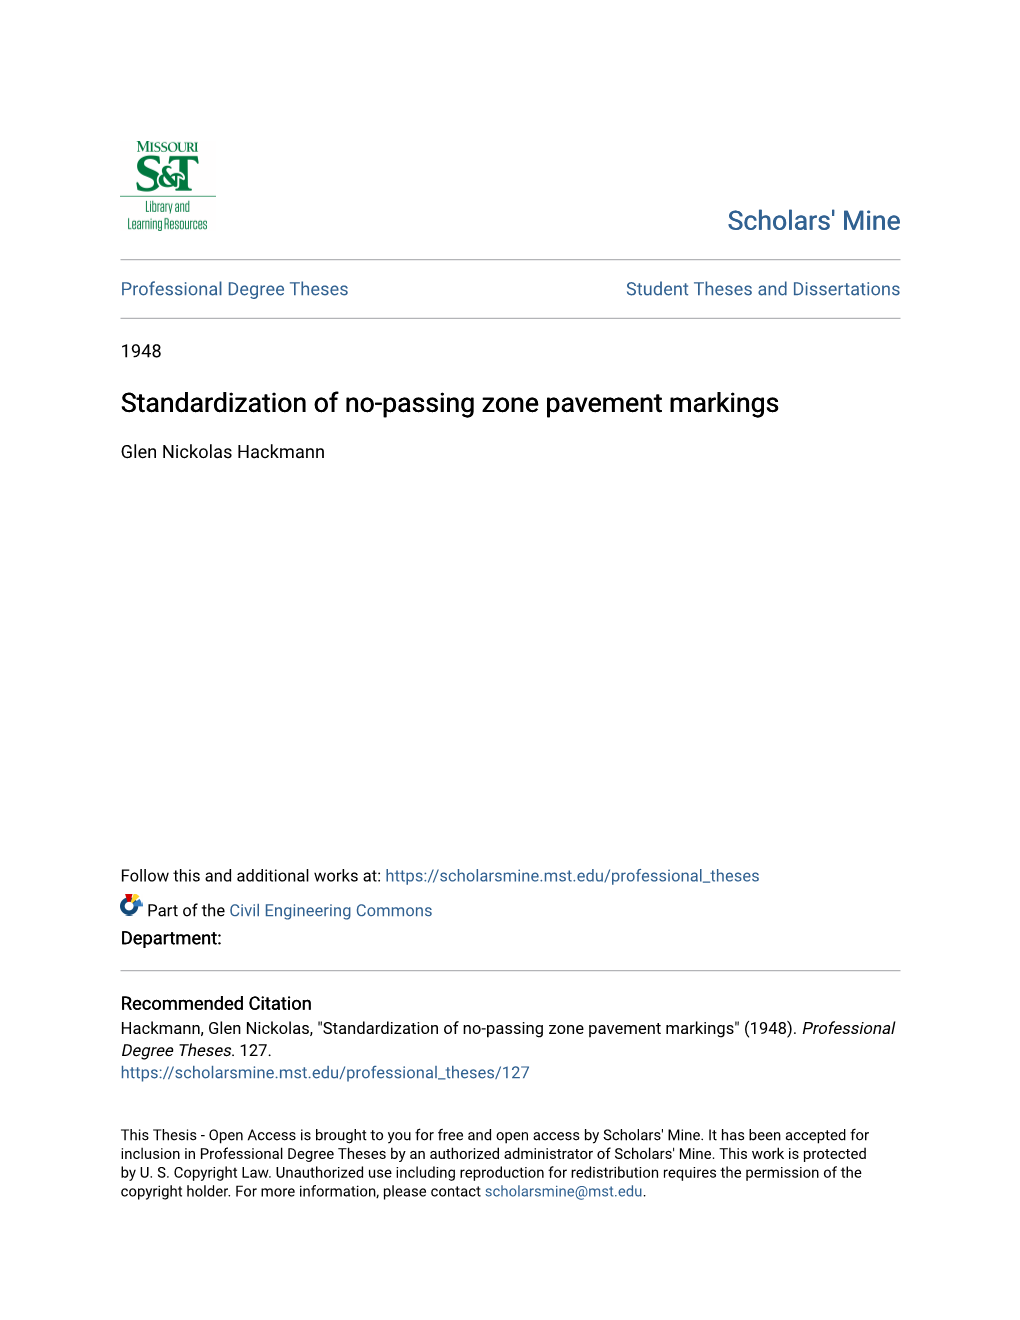 Standardization of No-Passing Zone Pavement Markings